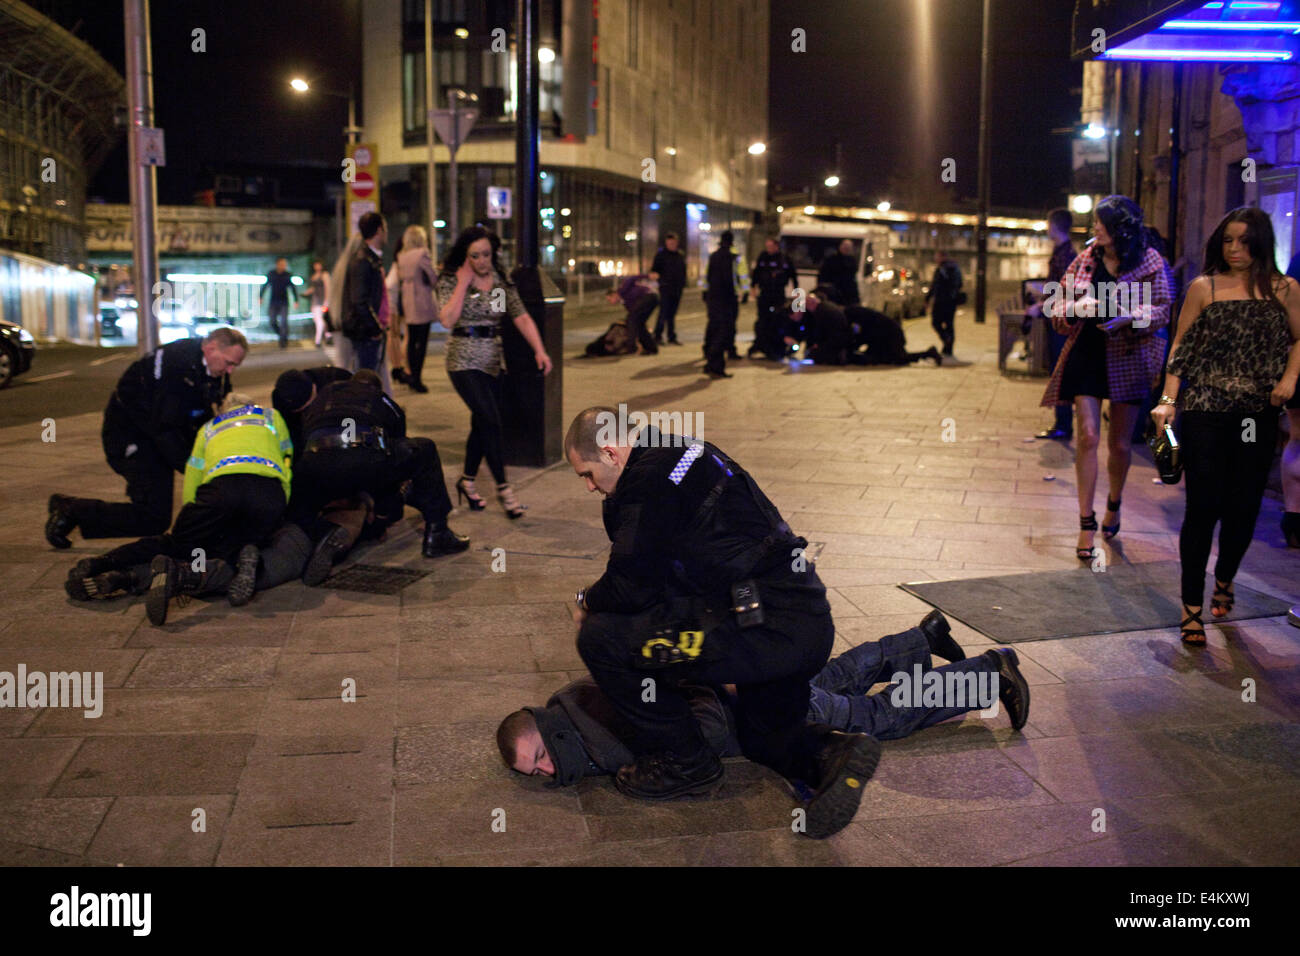 Arrêter des gens de la police et met fin à un combat un soir de fin de semaine dans le centre-ville de Cardiff, Pays de Galles, Royaume-Uni Banque D'Images